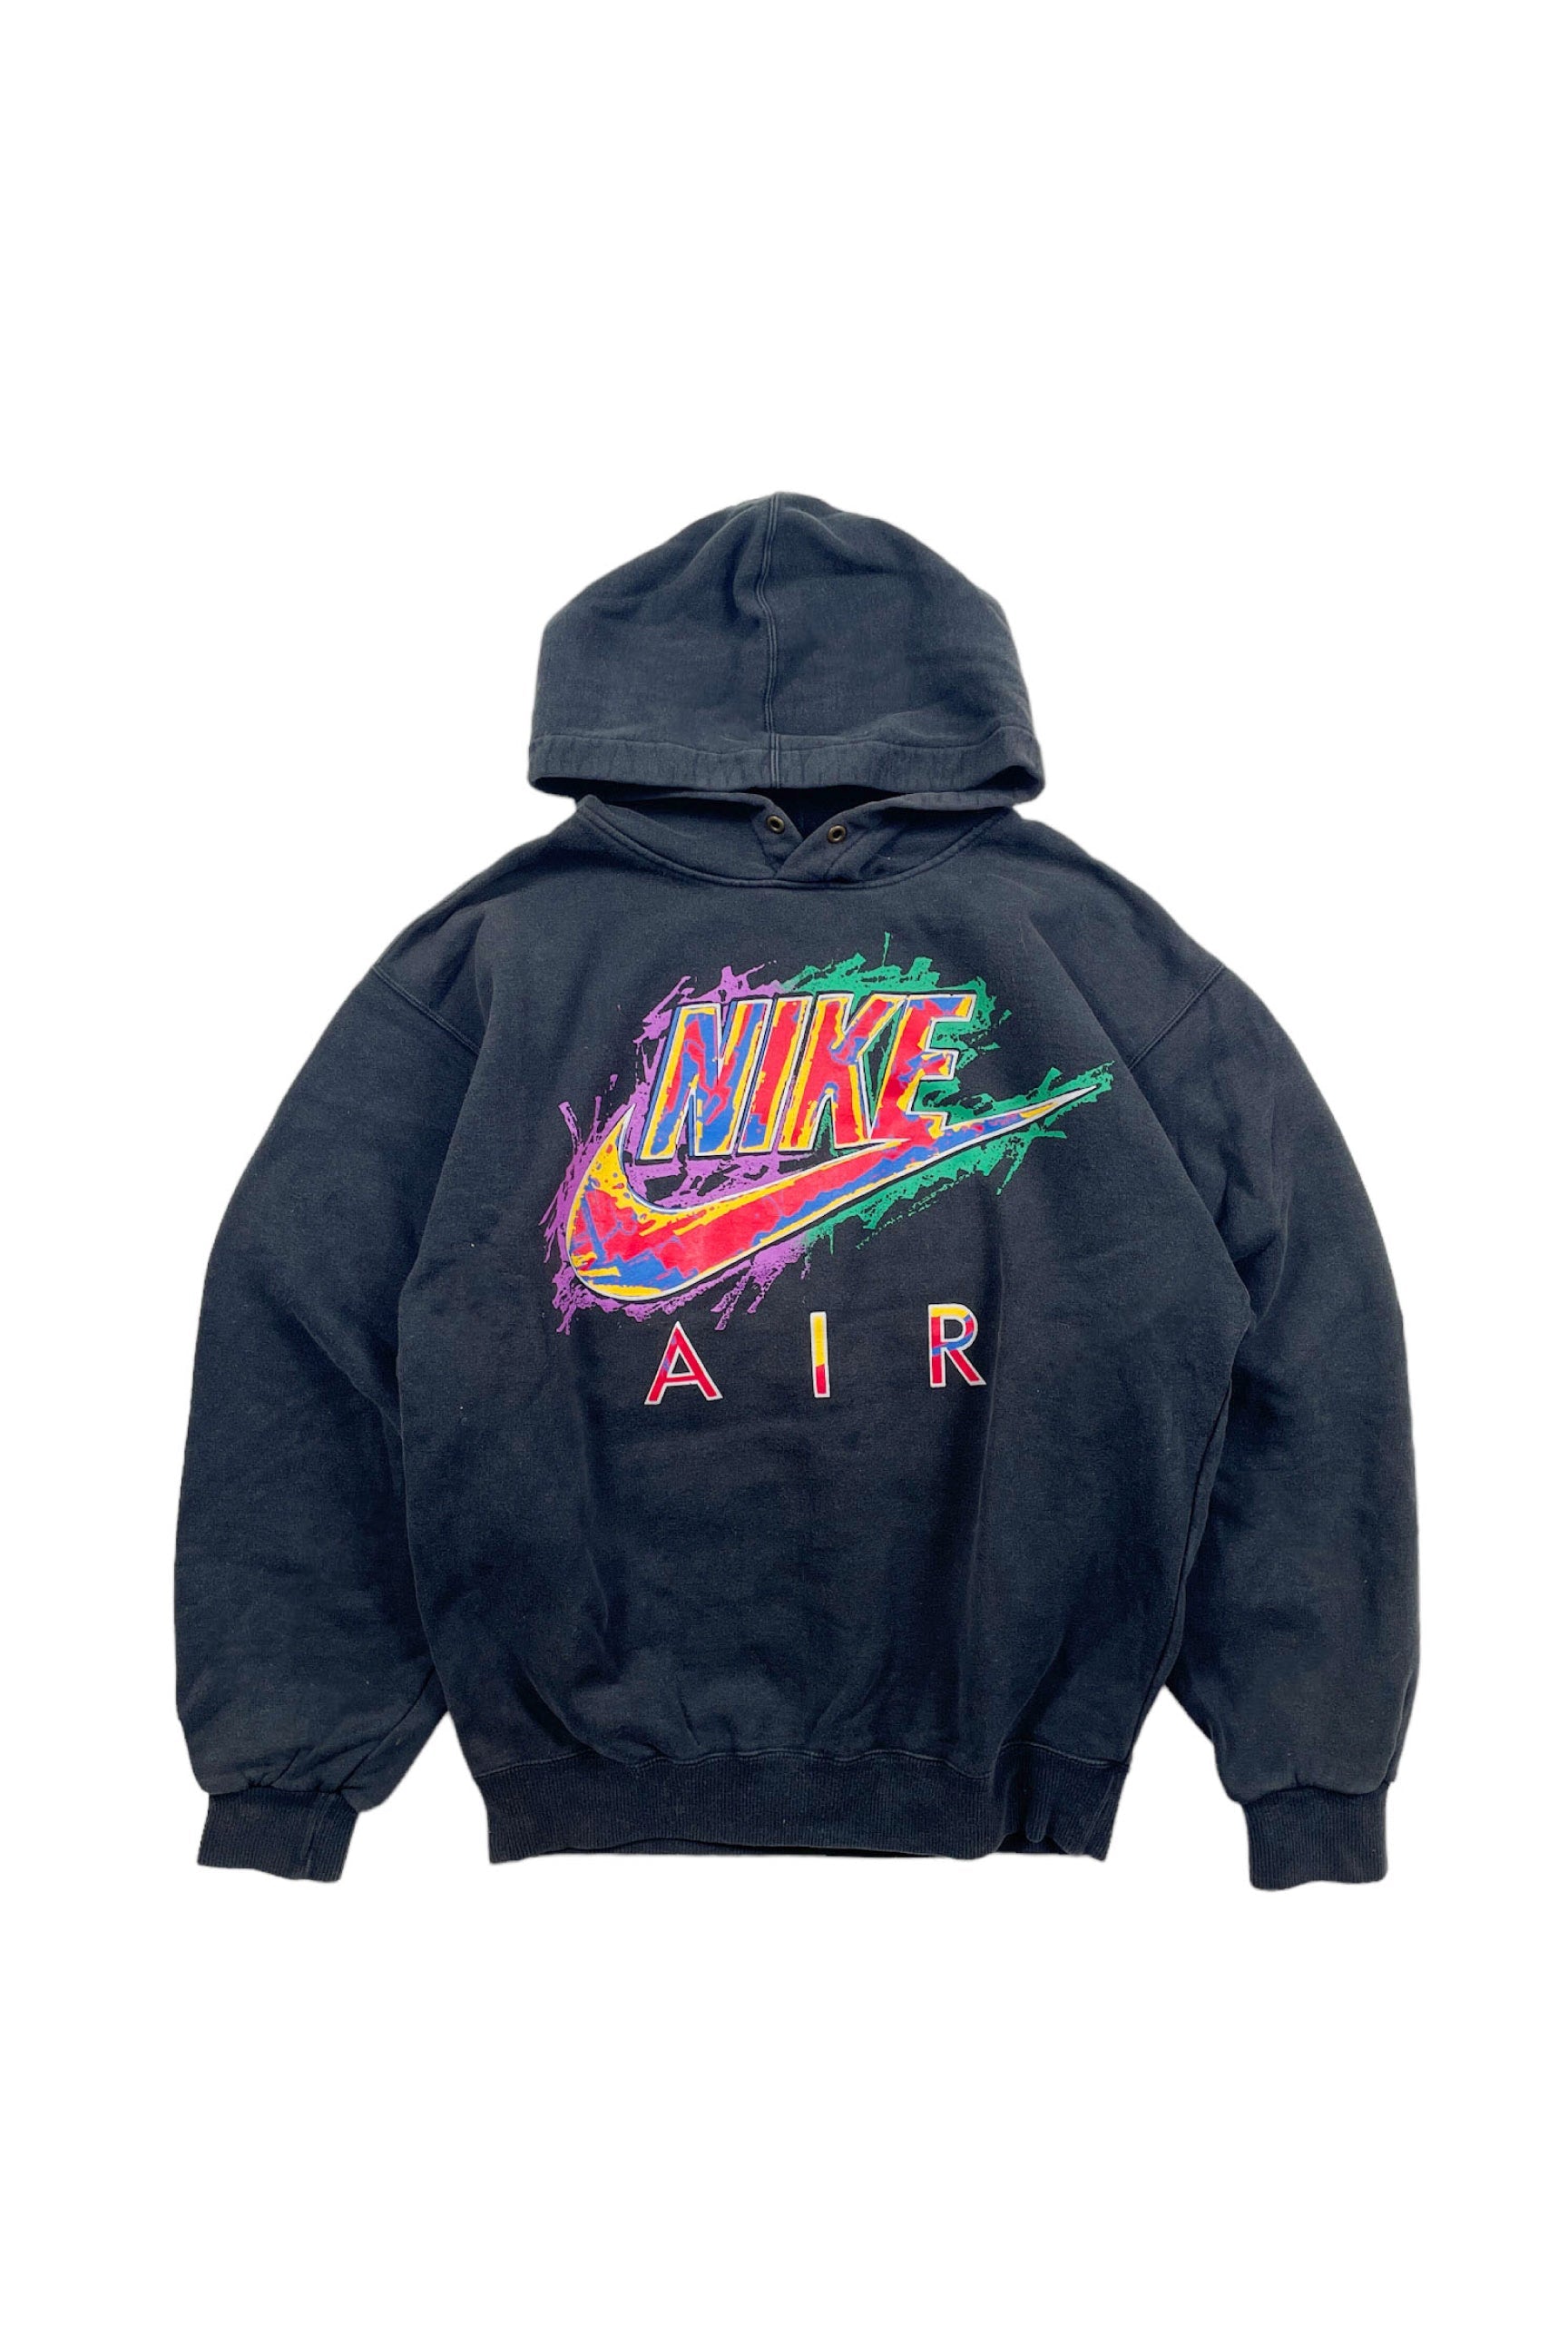 90's NIKE AIR hoodie